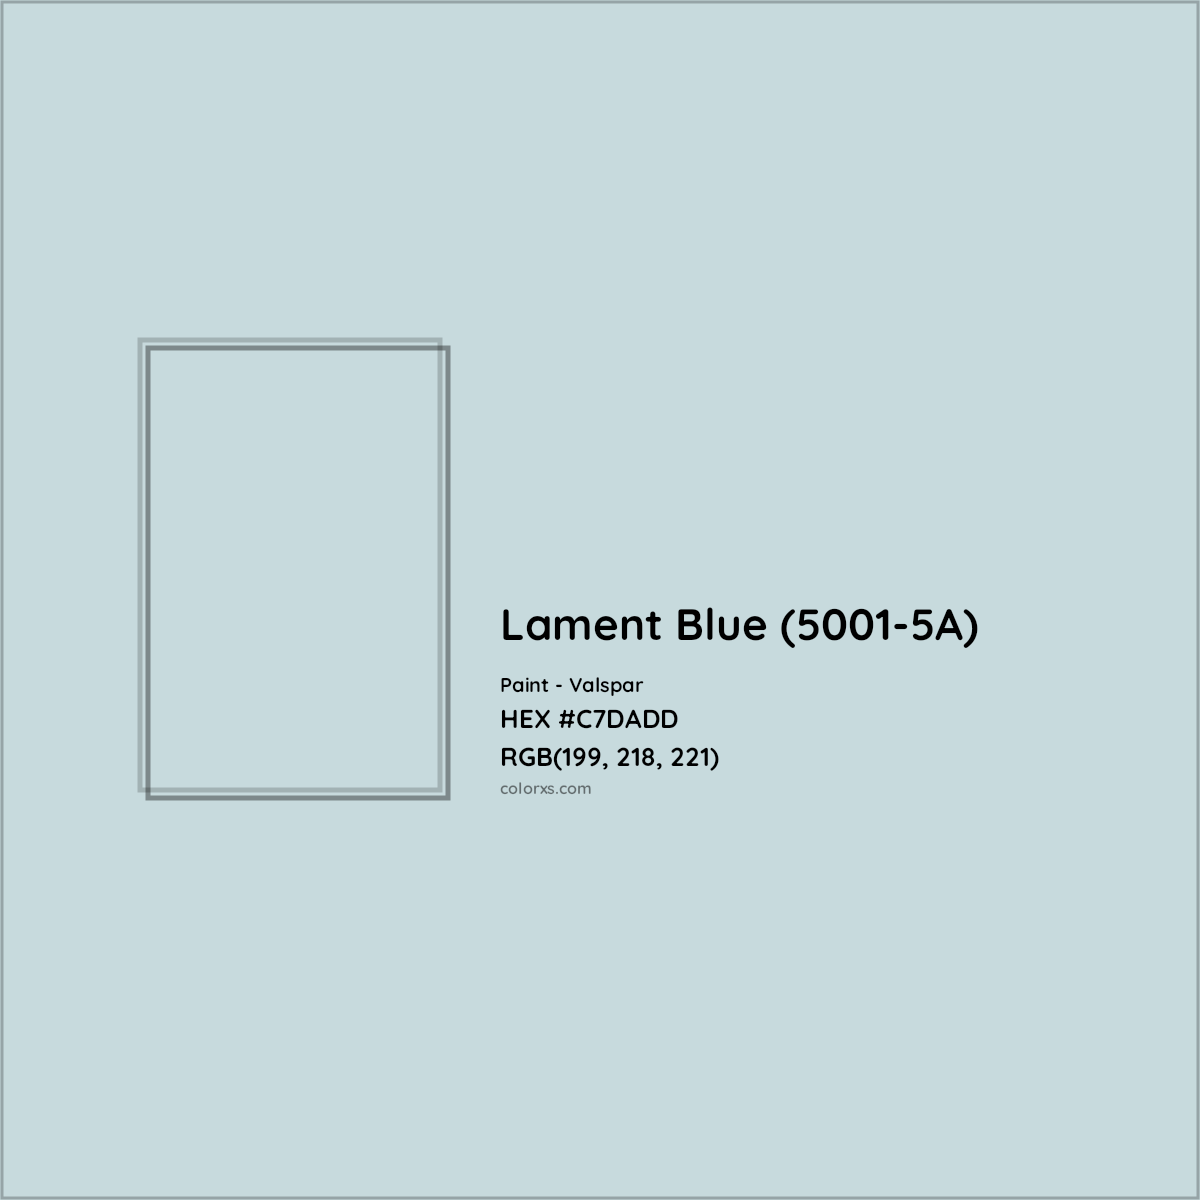 HEX #C7DADD Lament Blue (5001-5A) Paint Valspar - Color Code